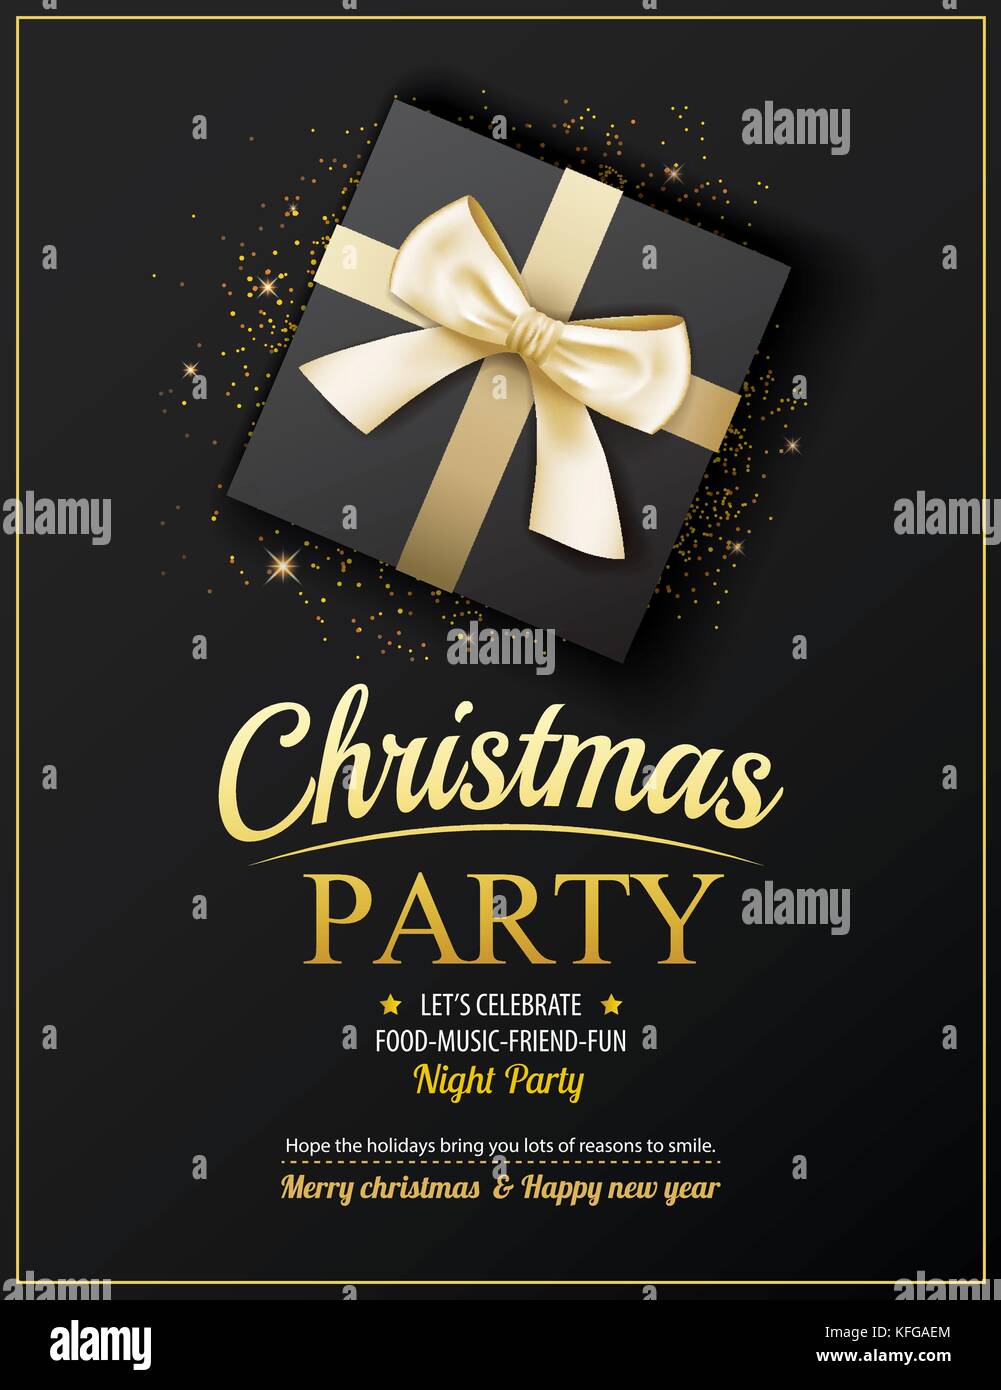 Einladung Merry Christmas Party Poster Banner Und Card Design Vorlage Schone Ferien Und Das Neue Jahr Mit Geschenkboxen Thema Konzept Stock Vektorgrafik Alamy